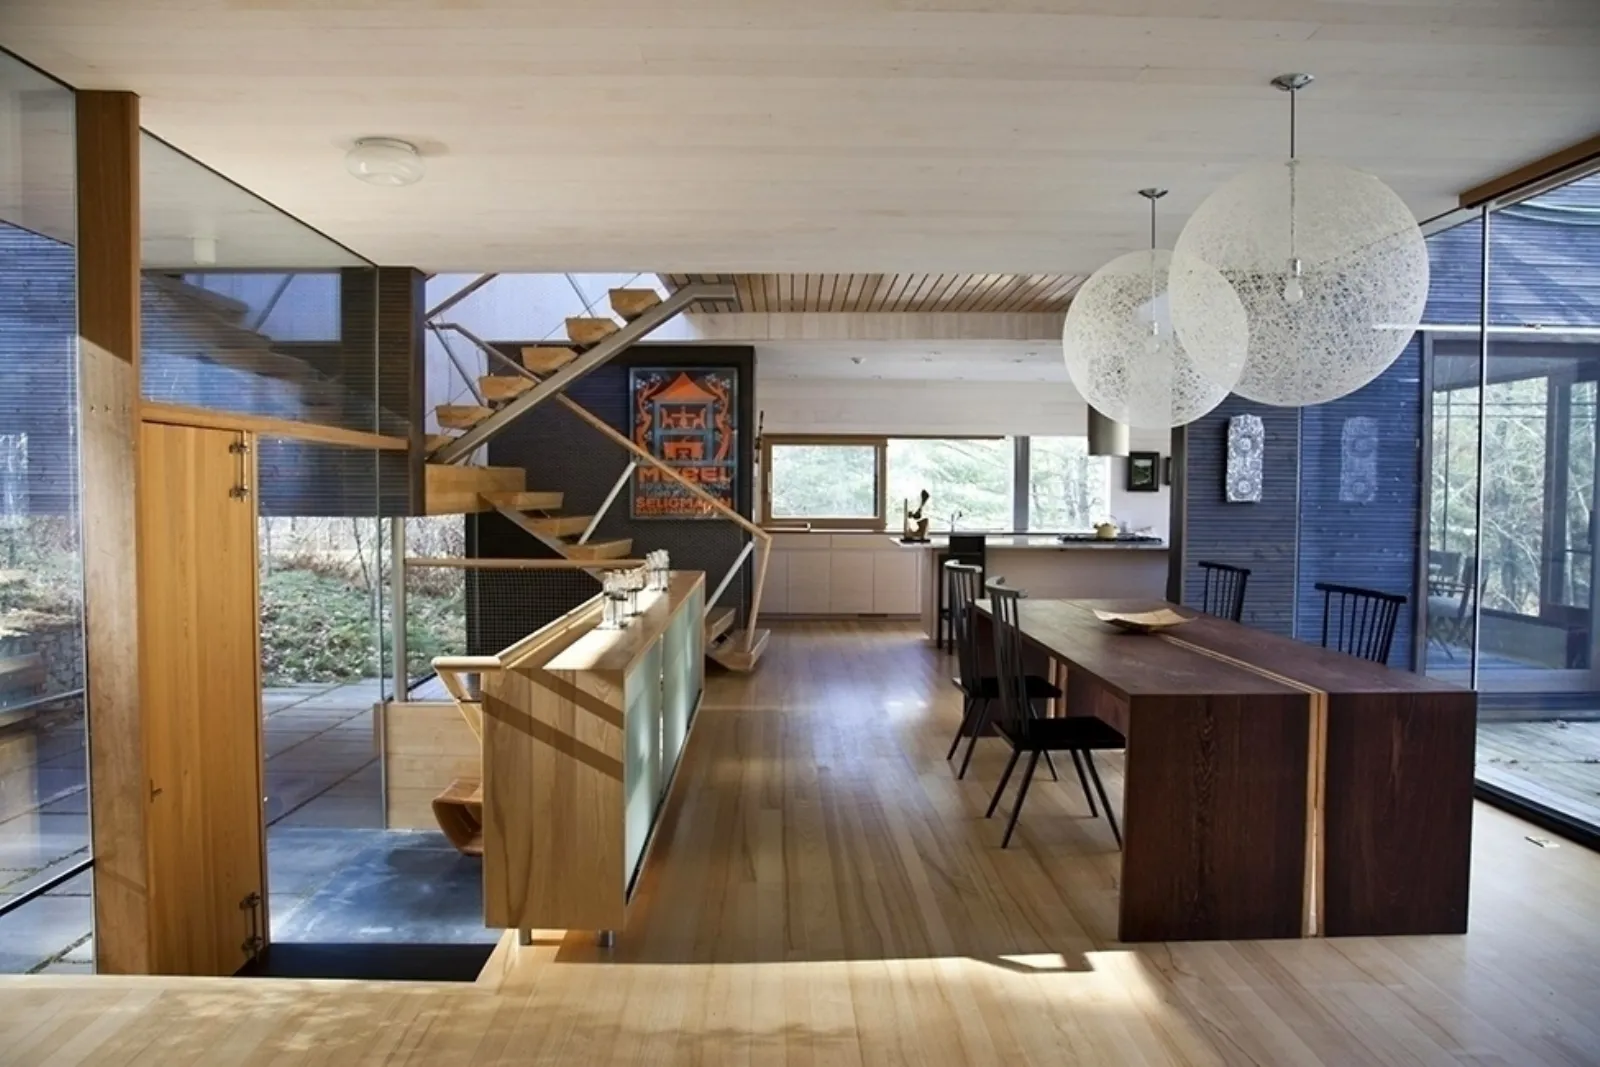 Casa moderna interni di stile progettazione casa for Design interni casa